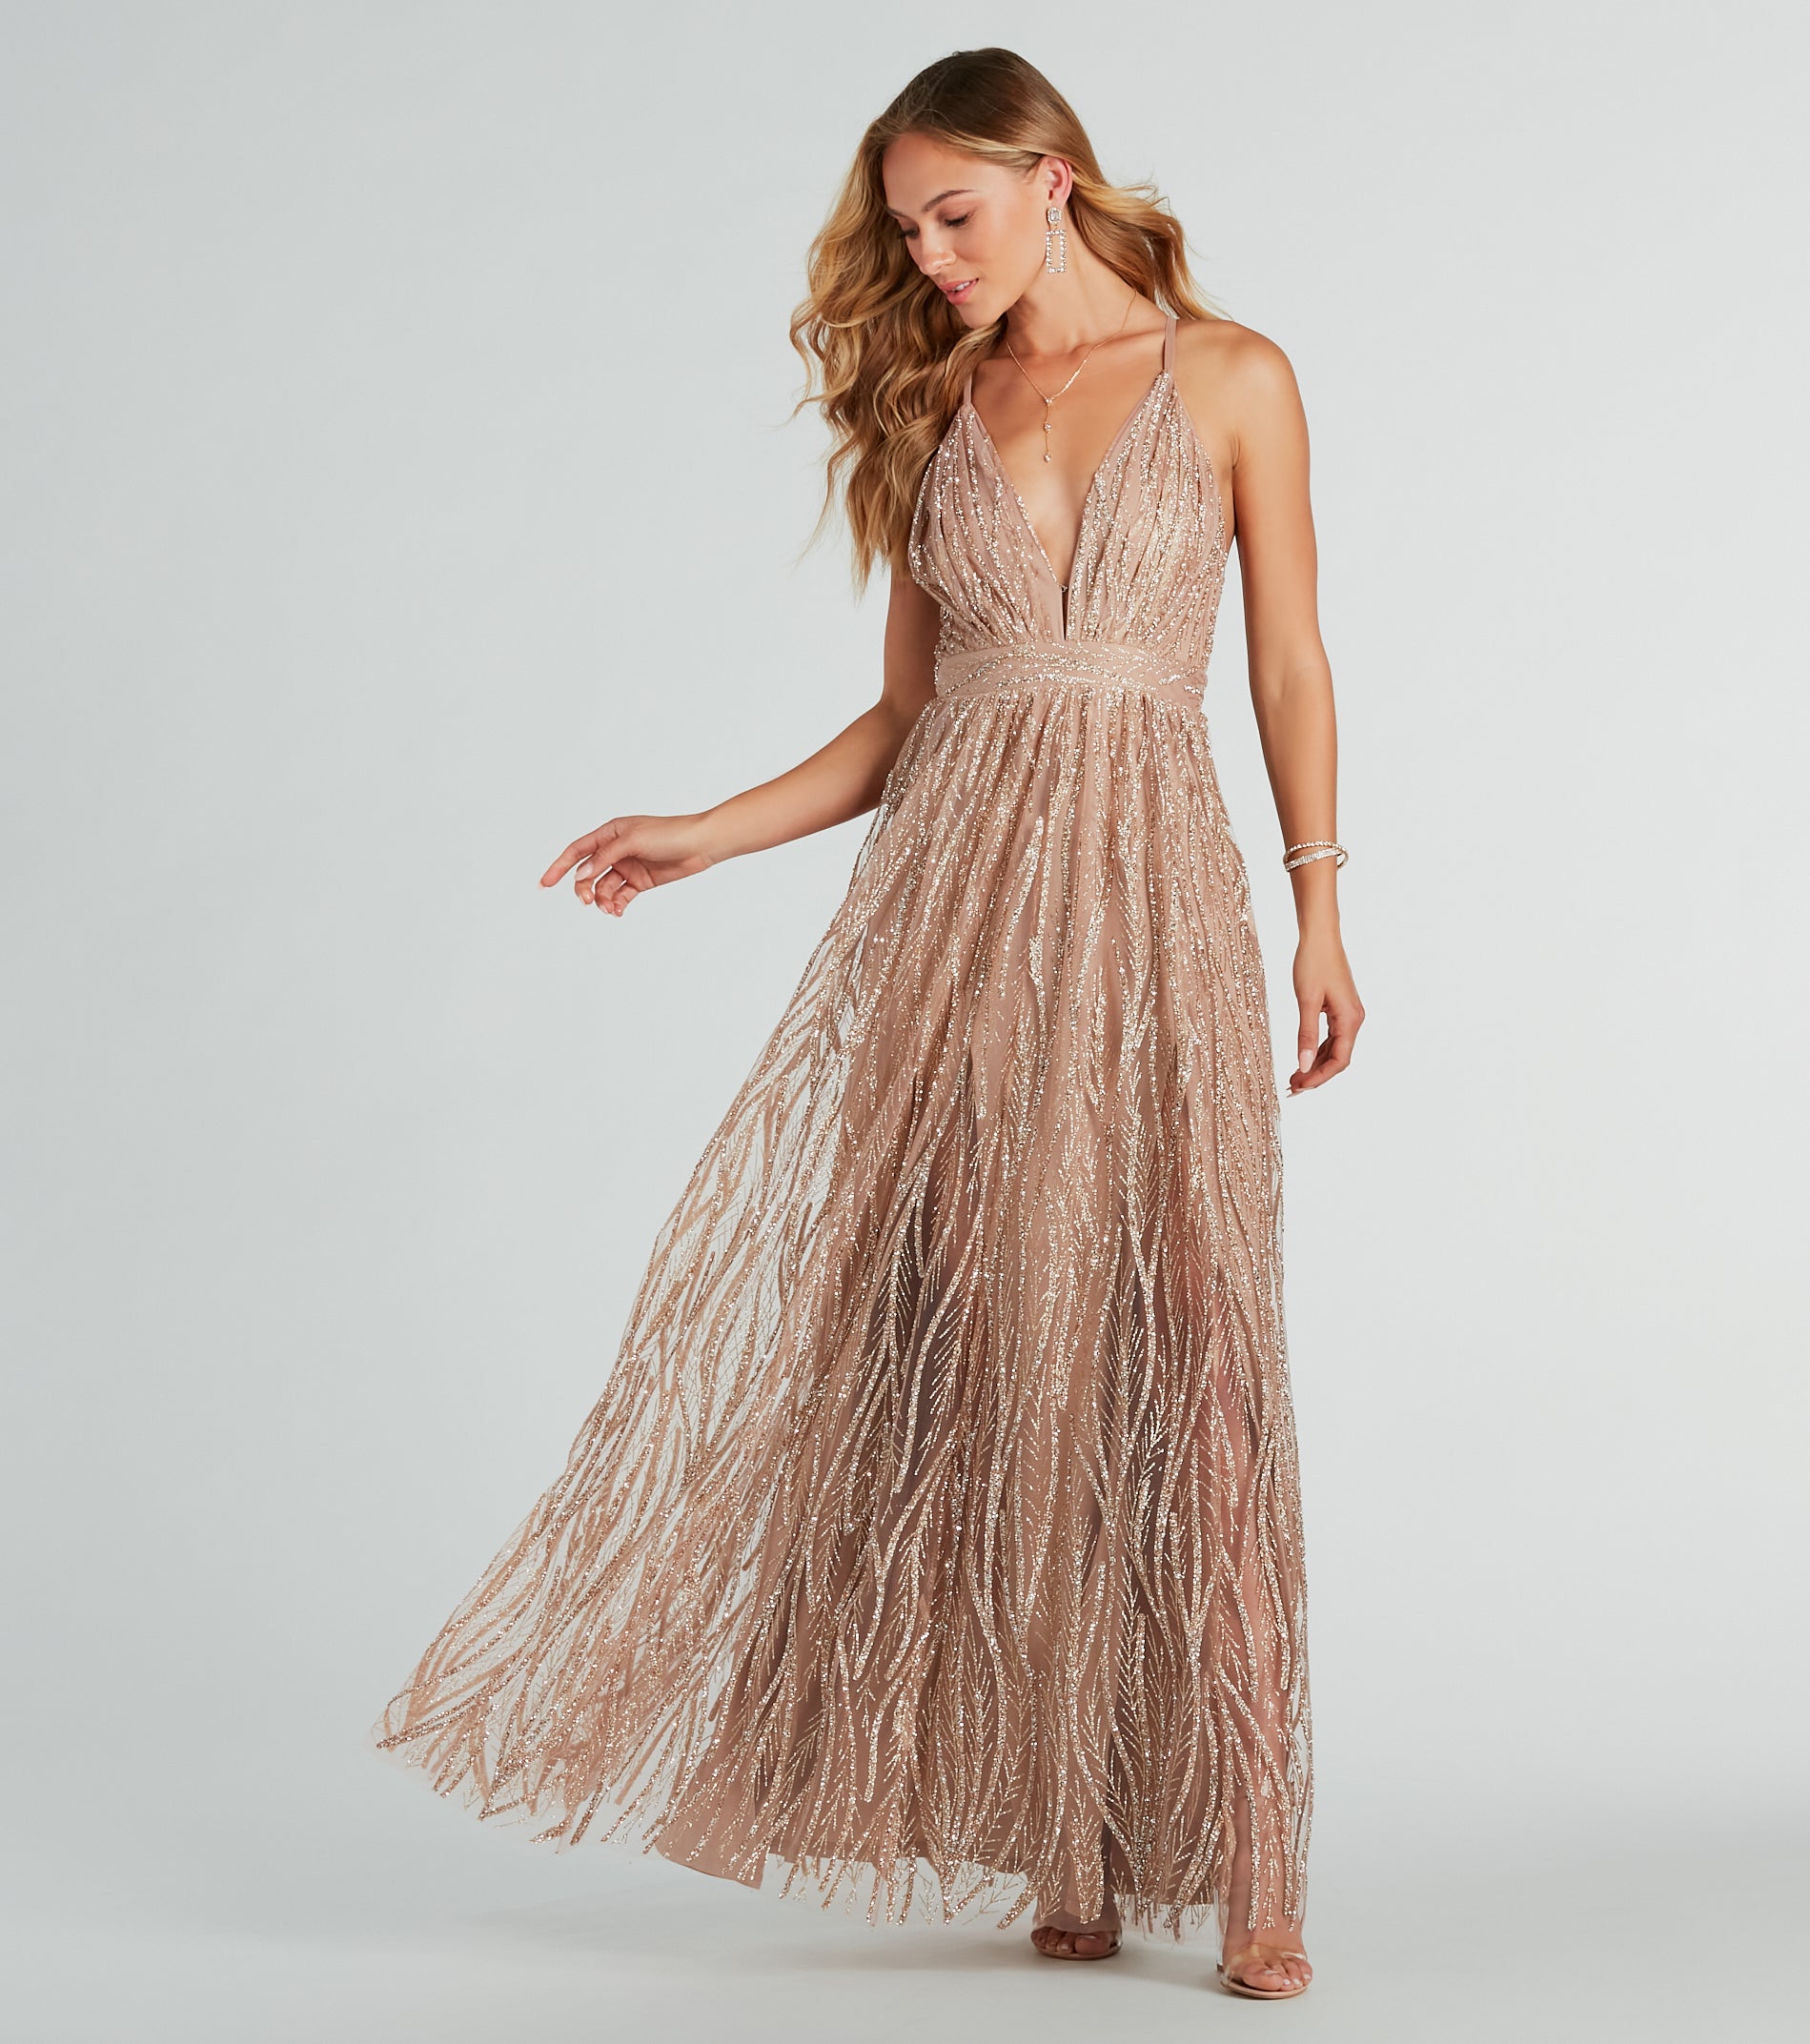 Azel Formal Glitter Tulle A-Line Long Dress